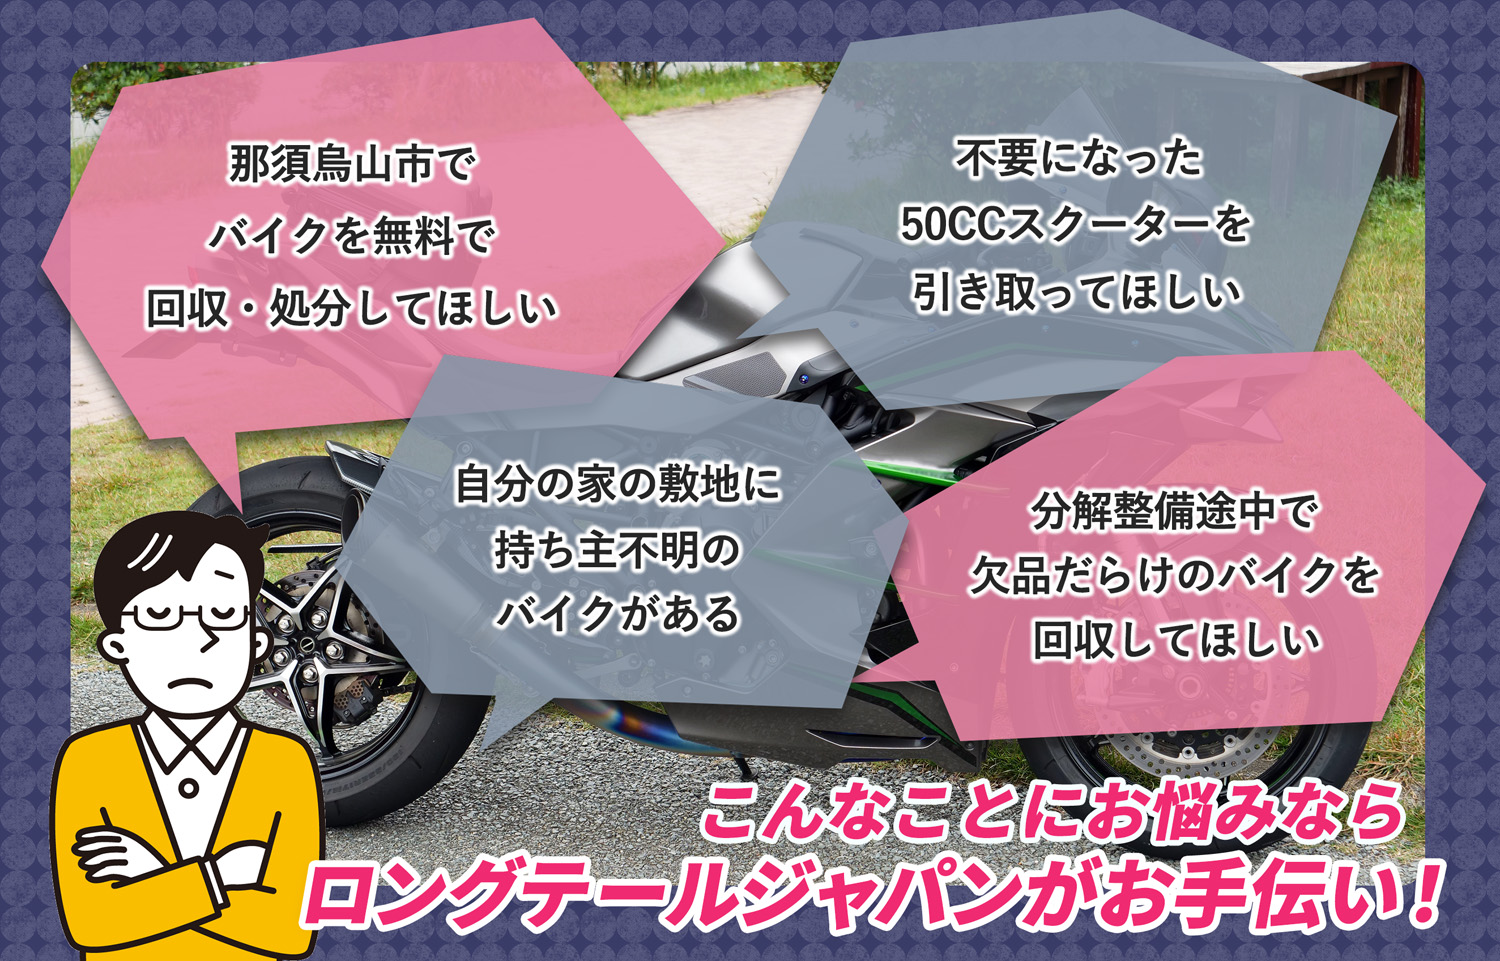 那須烏山市でこんなバイクの処分にお困りでしたらバイク無料回収処分隊がお手伝いいたします。